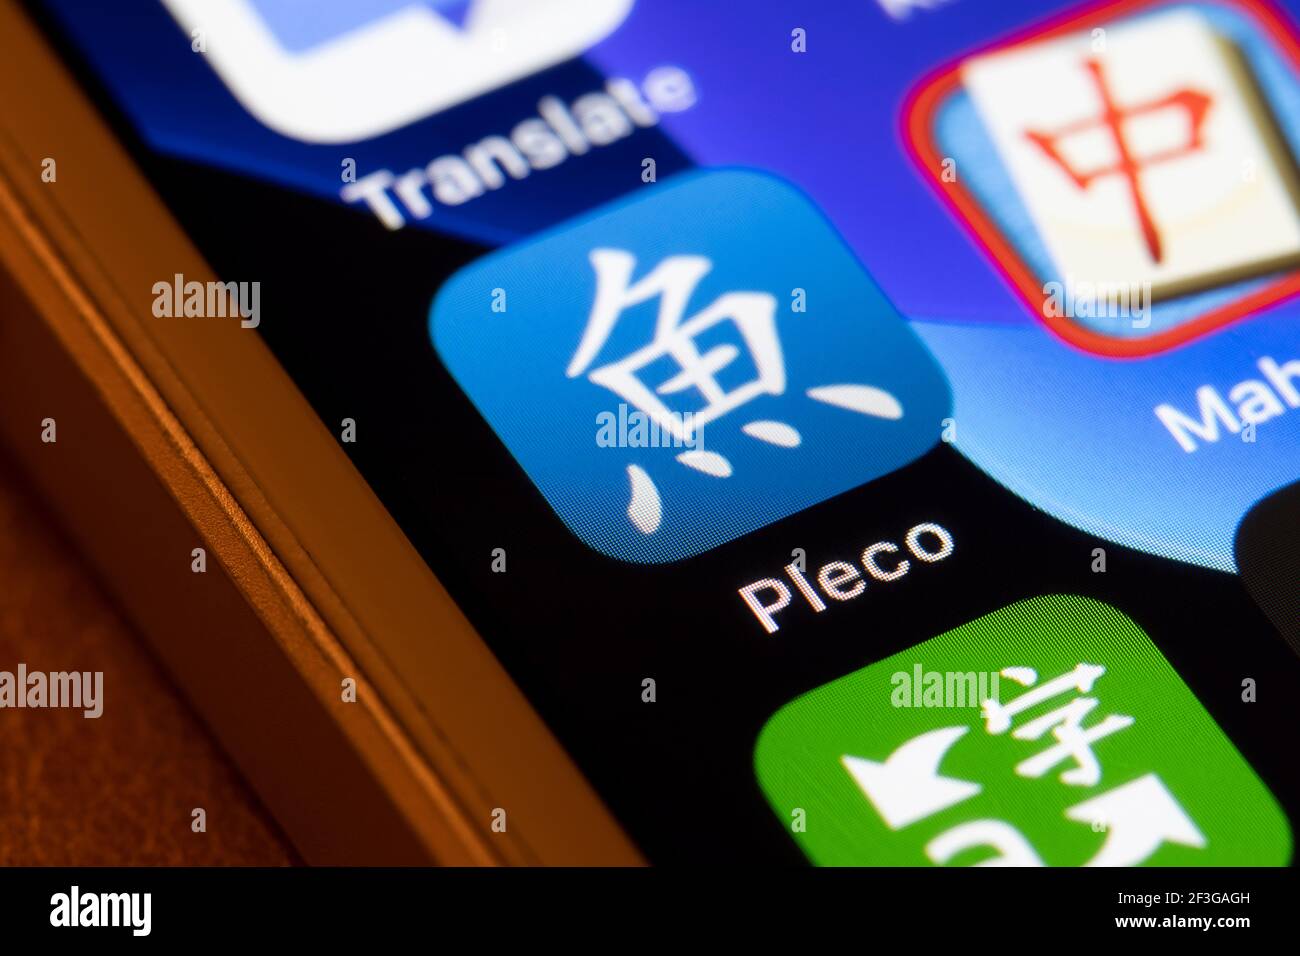 L'icône de l'application Pleco s'affiche sur un iPhone. Pleco est un dictionnaire anglais et chinois intégré, un lecteur de documents et un système de cartes mémoire flash. Banque D'Images